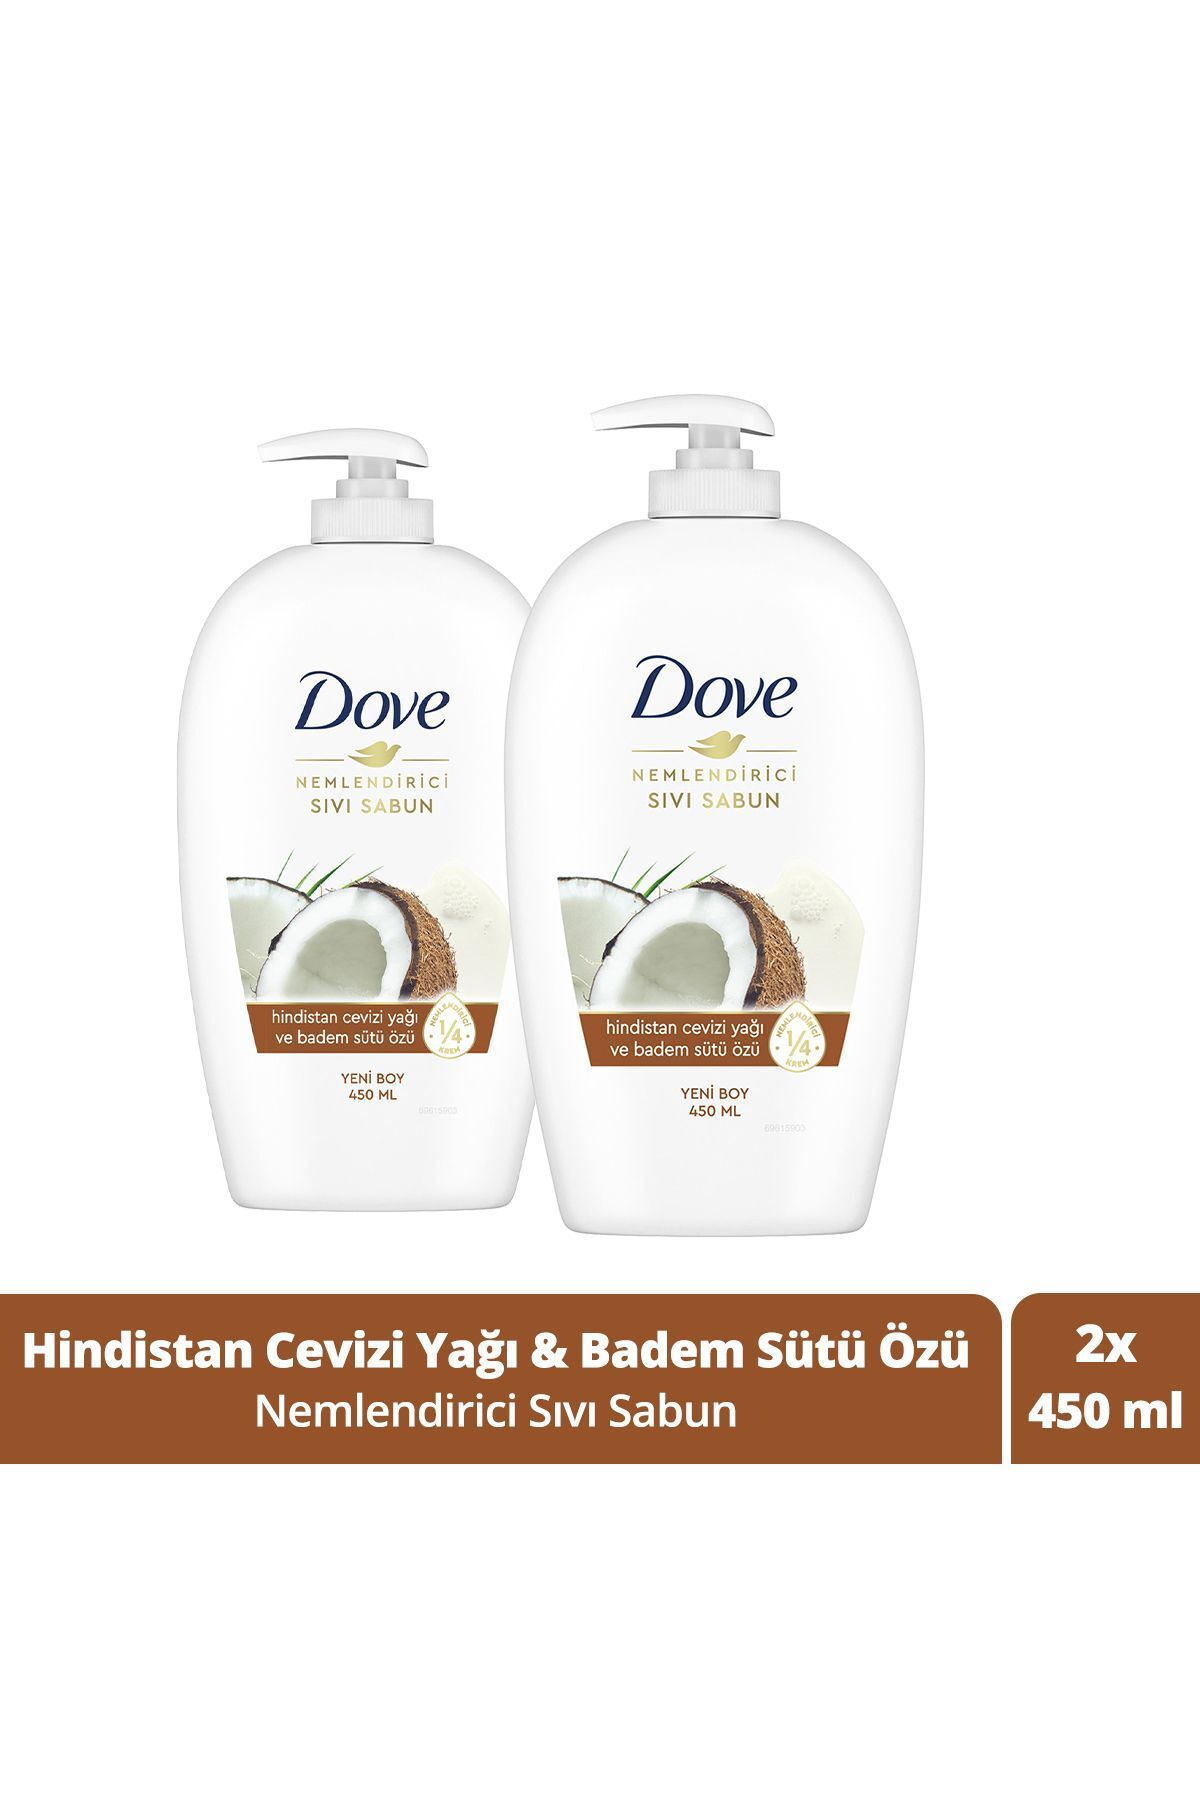 Dove Nemlendirici Sıvı Sabun Hindistan Cevizi Yağı Ve Badem Sütü Özü 450 ml X2 Adet